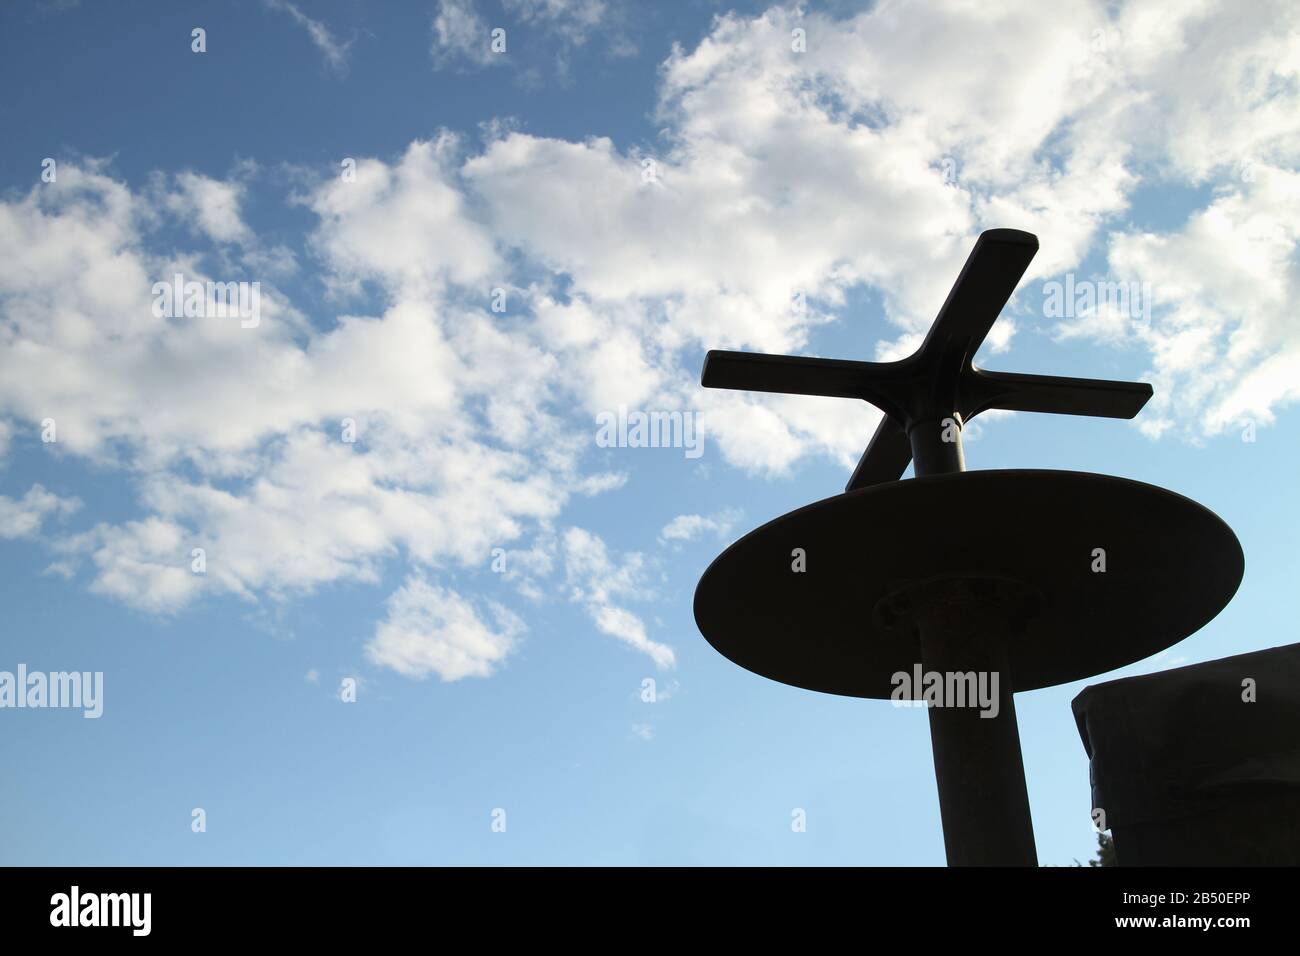 Silhouette einer militärischen mobilen Radarantenne der NATO gegen einen blauen Himmel und weiße Wolken, Konzept der schädlichen Auswirkungen elektromagnetischer Strahlung Stockfoto